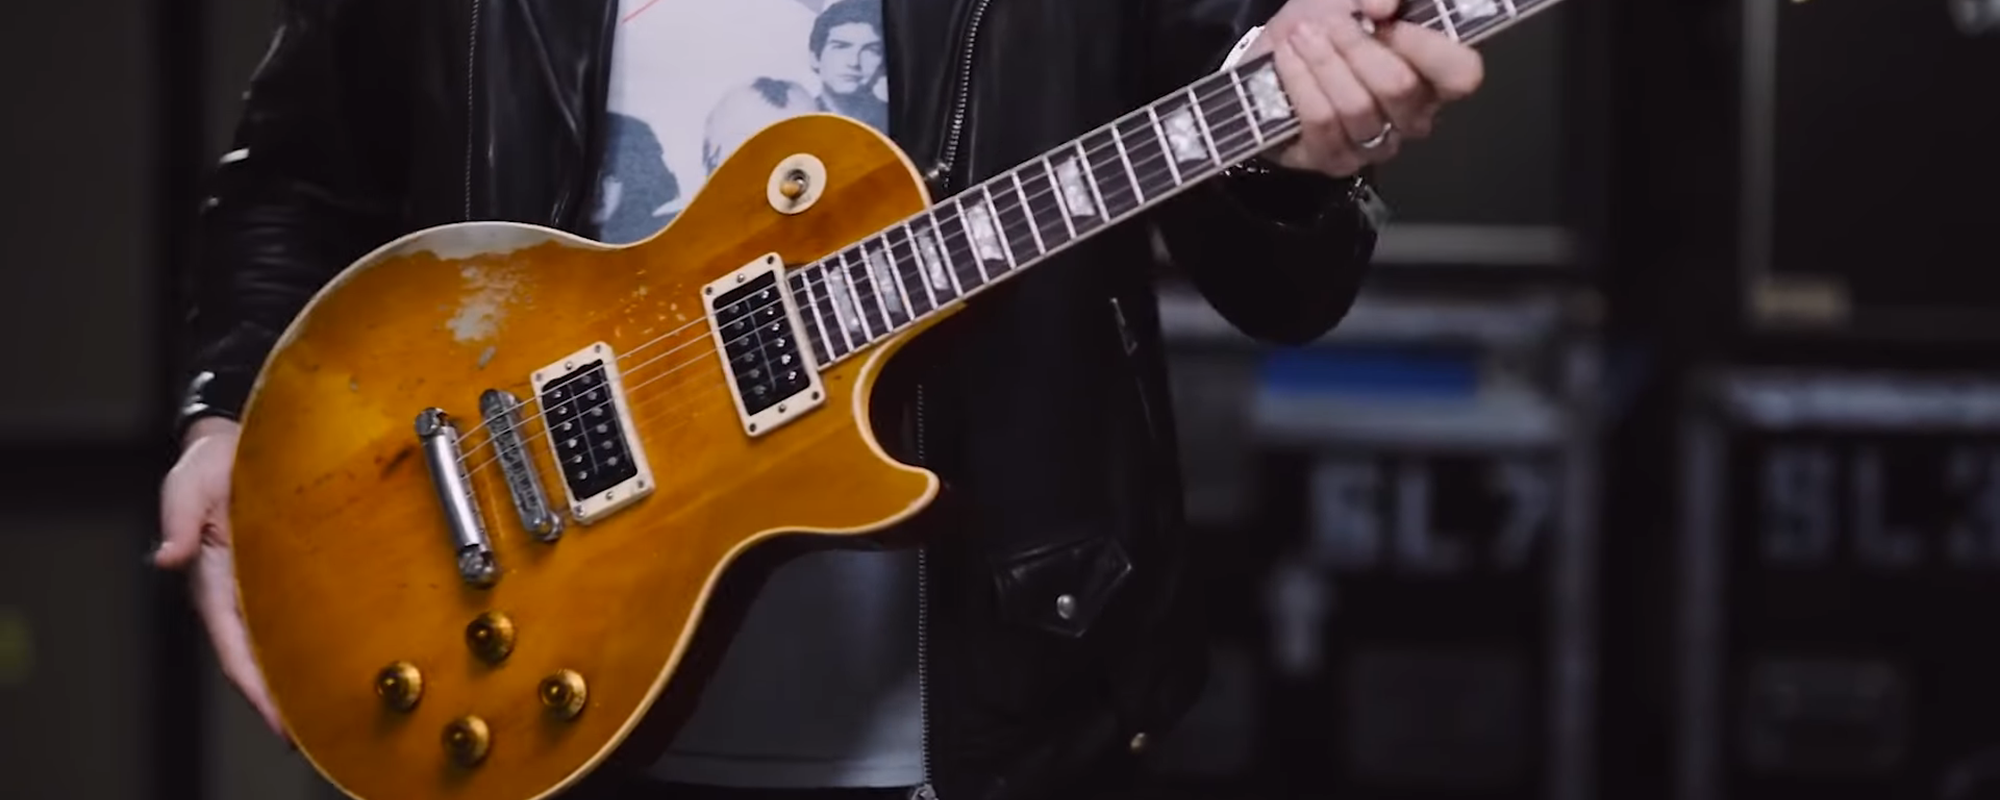 La guitare Les Paul de Slash « Jessica » maintenant disponible dans le monde entier